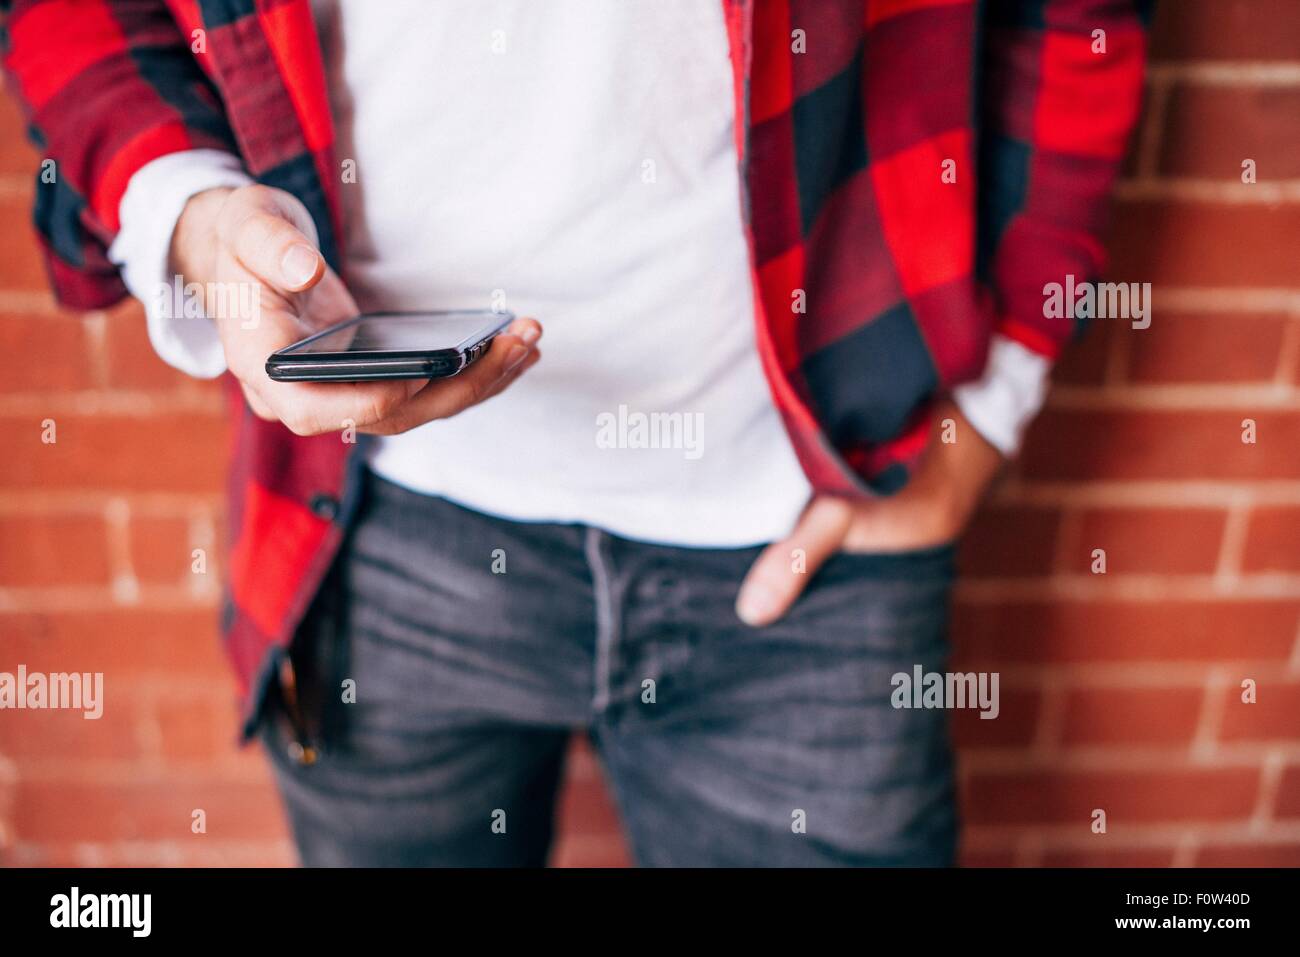 Dettaglio shot delle mani dell'uomo smartphone di contenimento Foto Stock